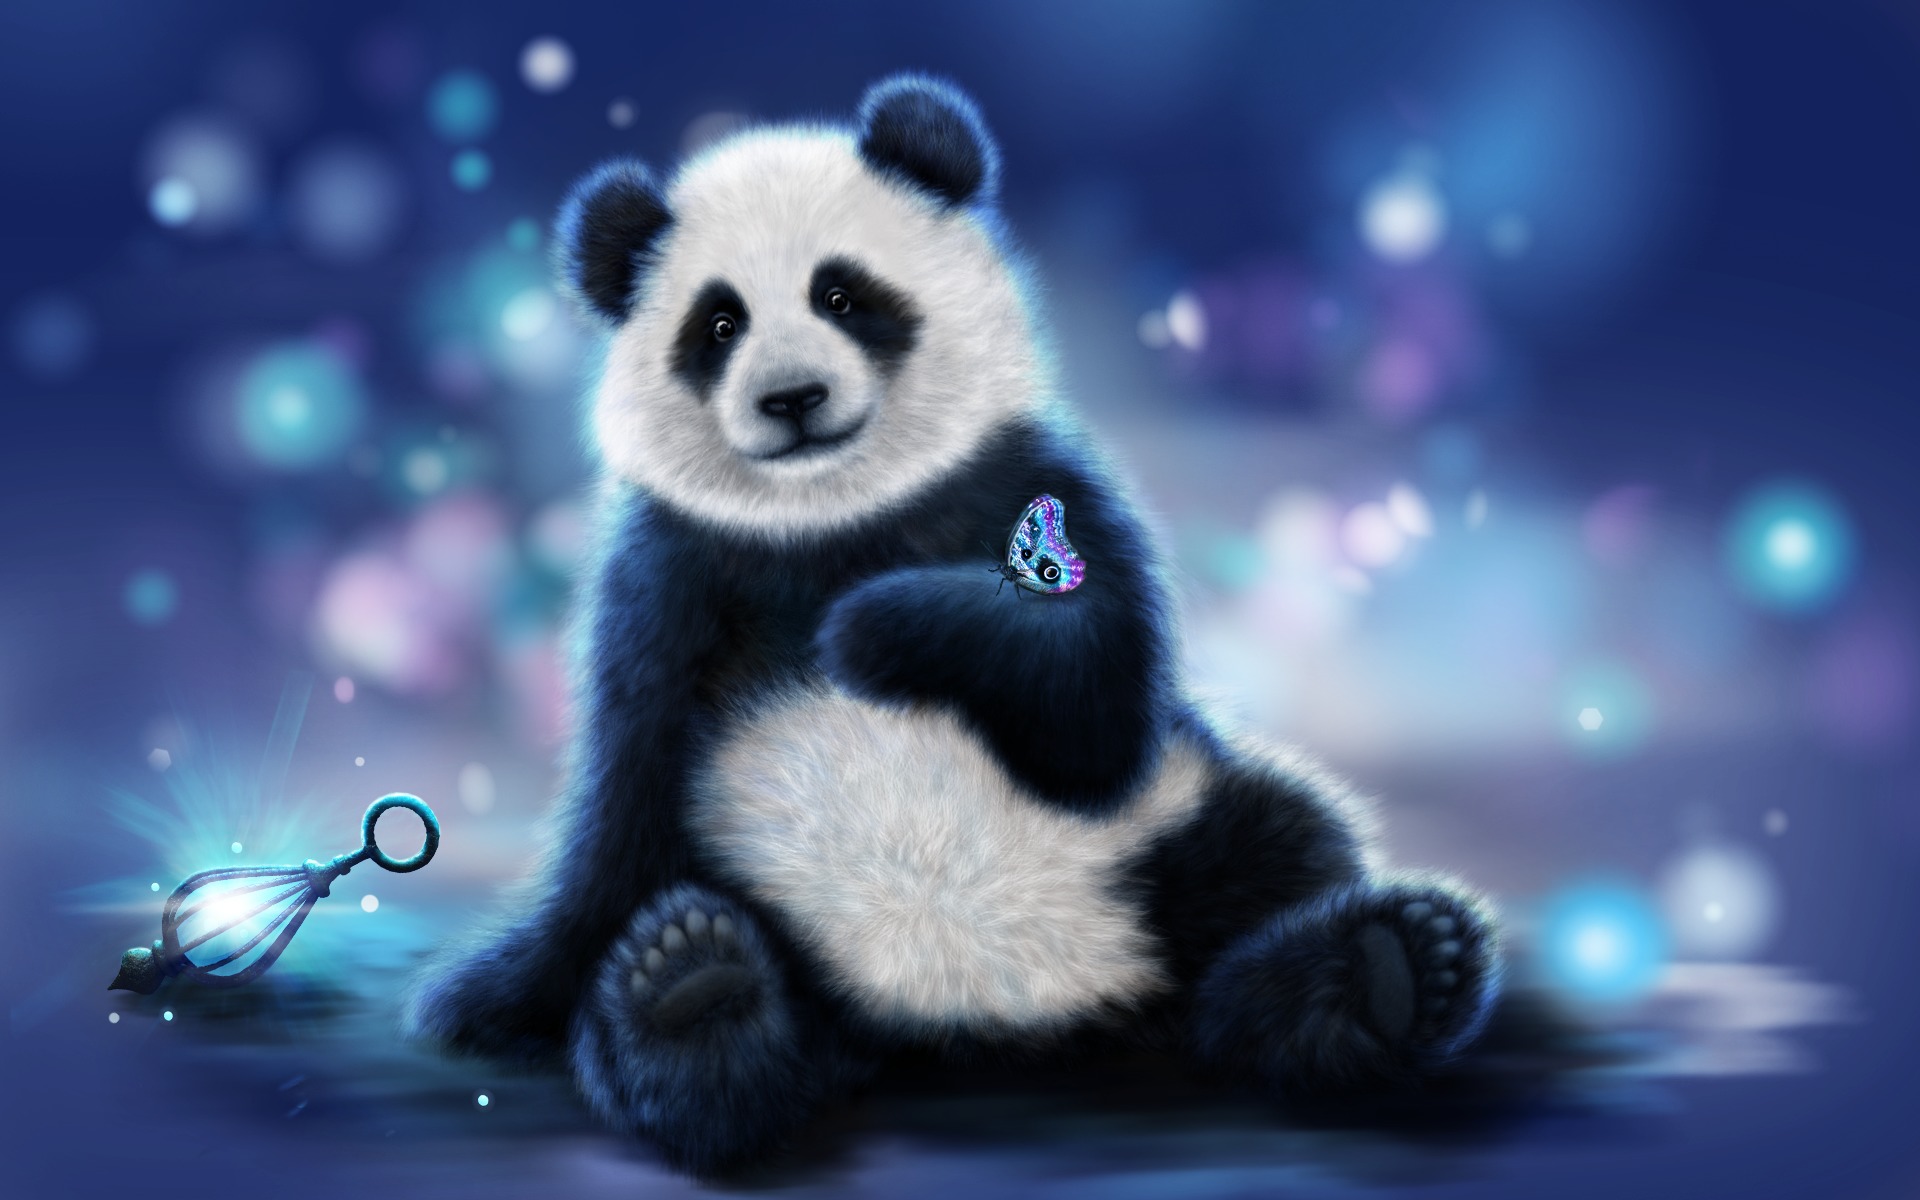 70+] Cute Panda Wallpapers - WallpaperSafari